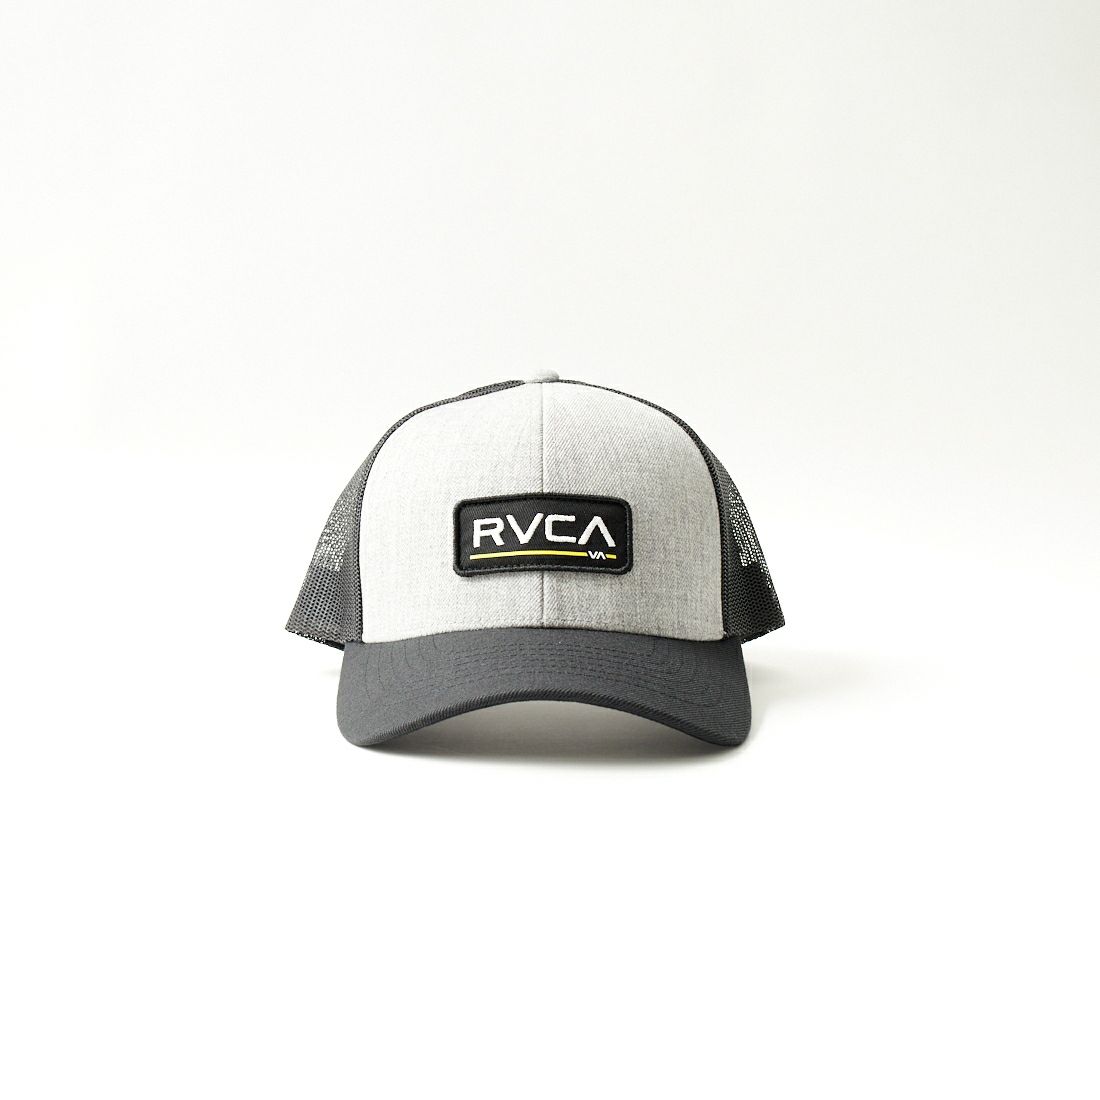 RVCA [ルーカ] TICKET トラッカーキャップ [BE041-920]